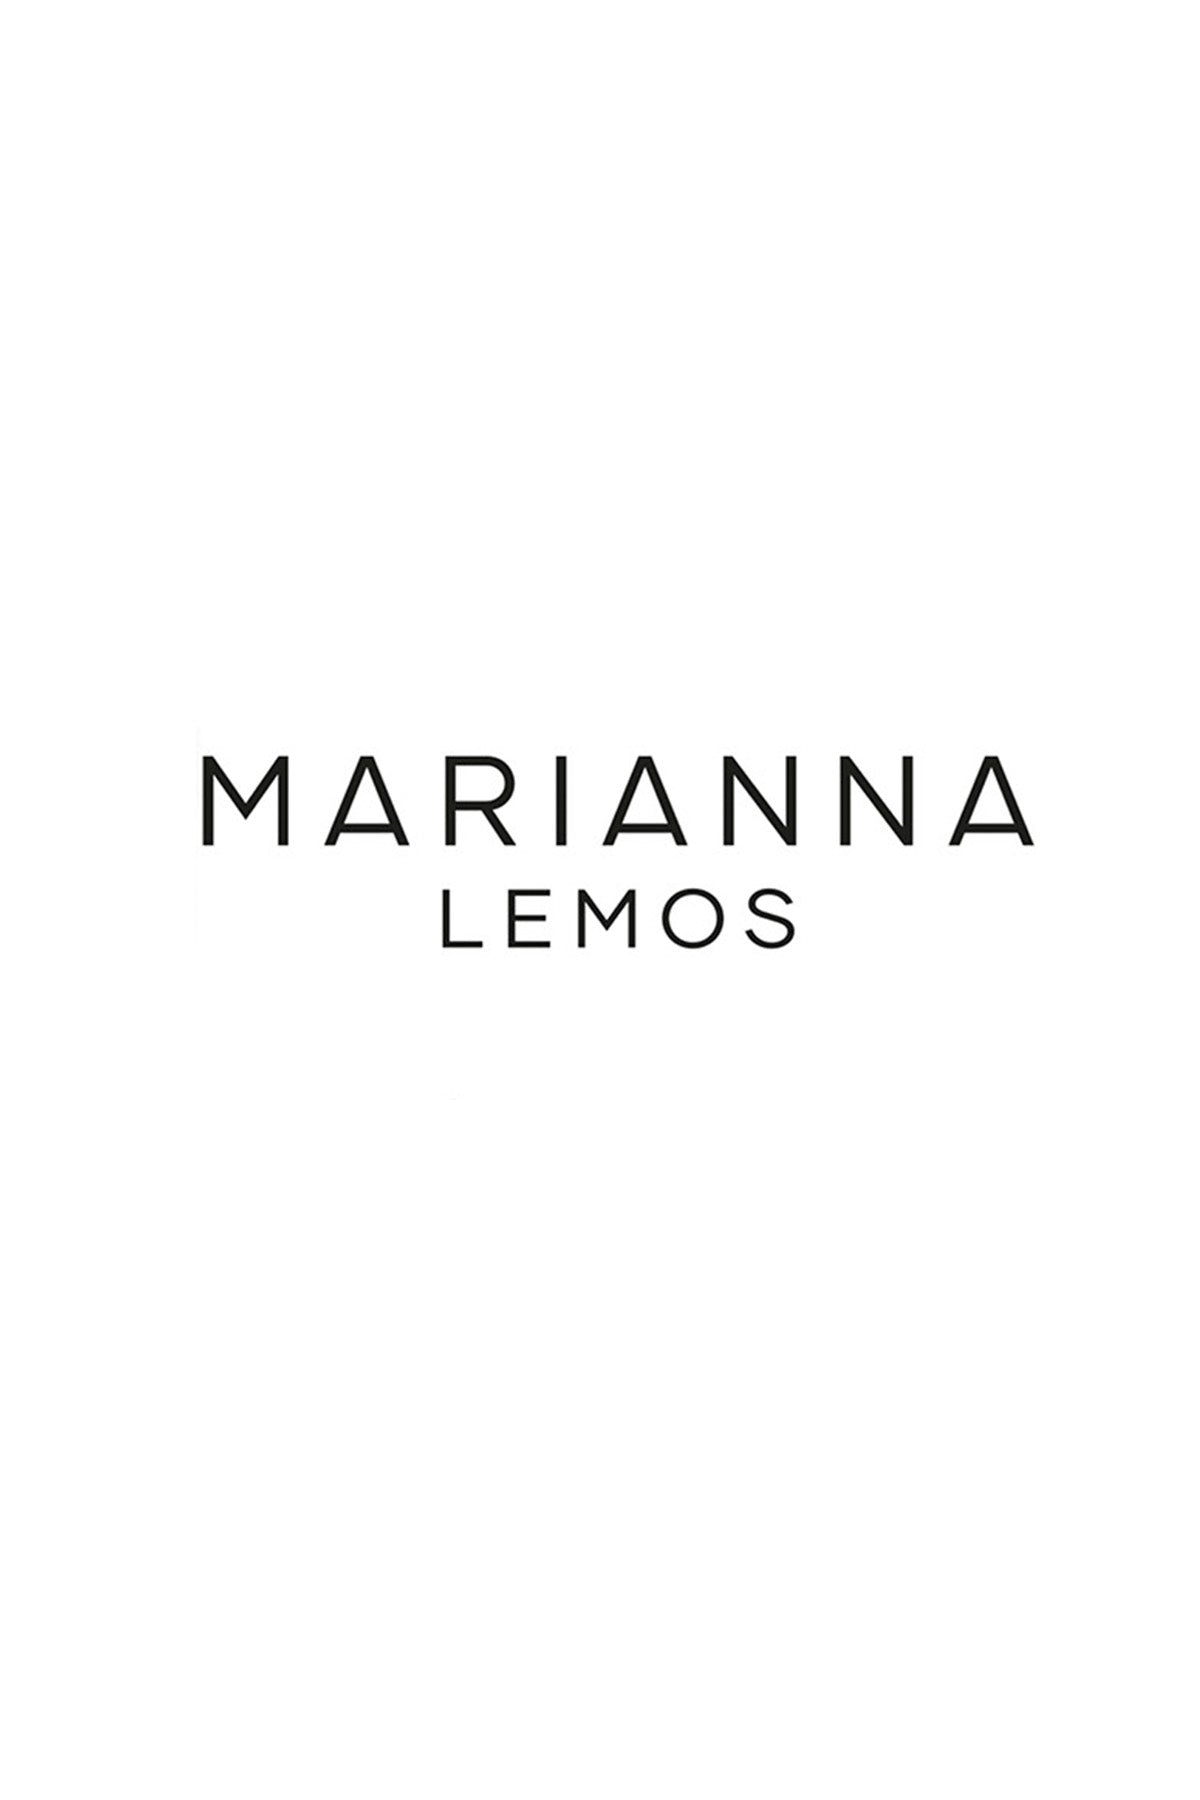 Marianna Lemos